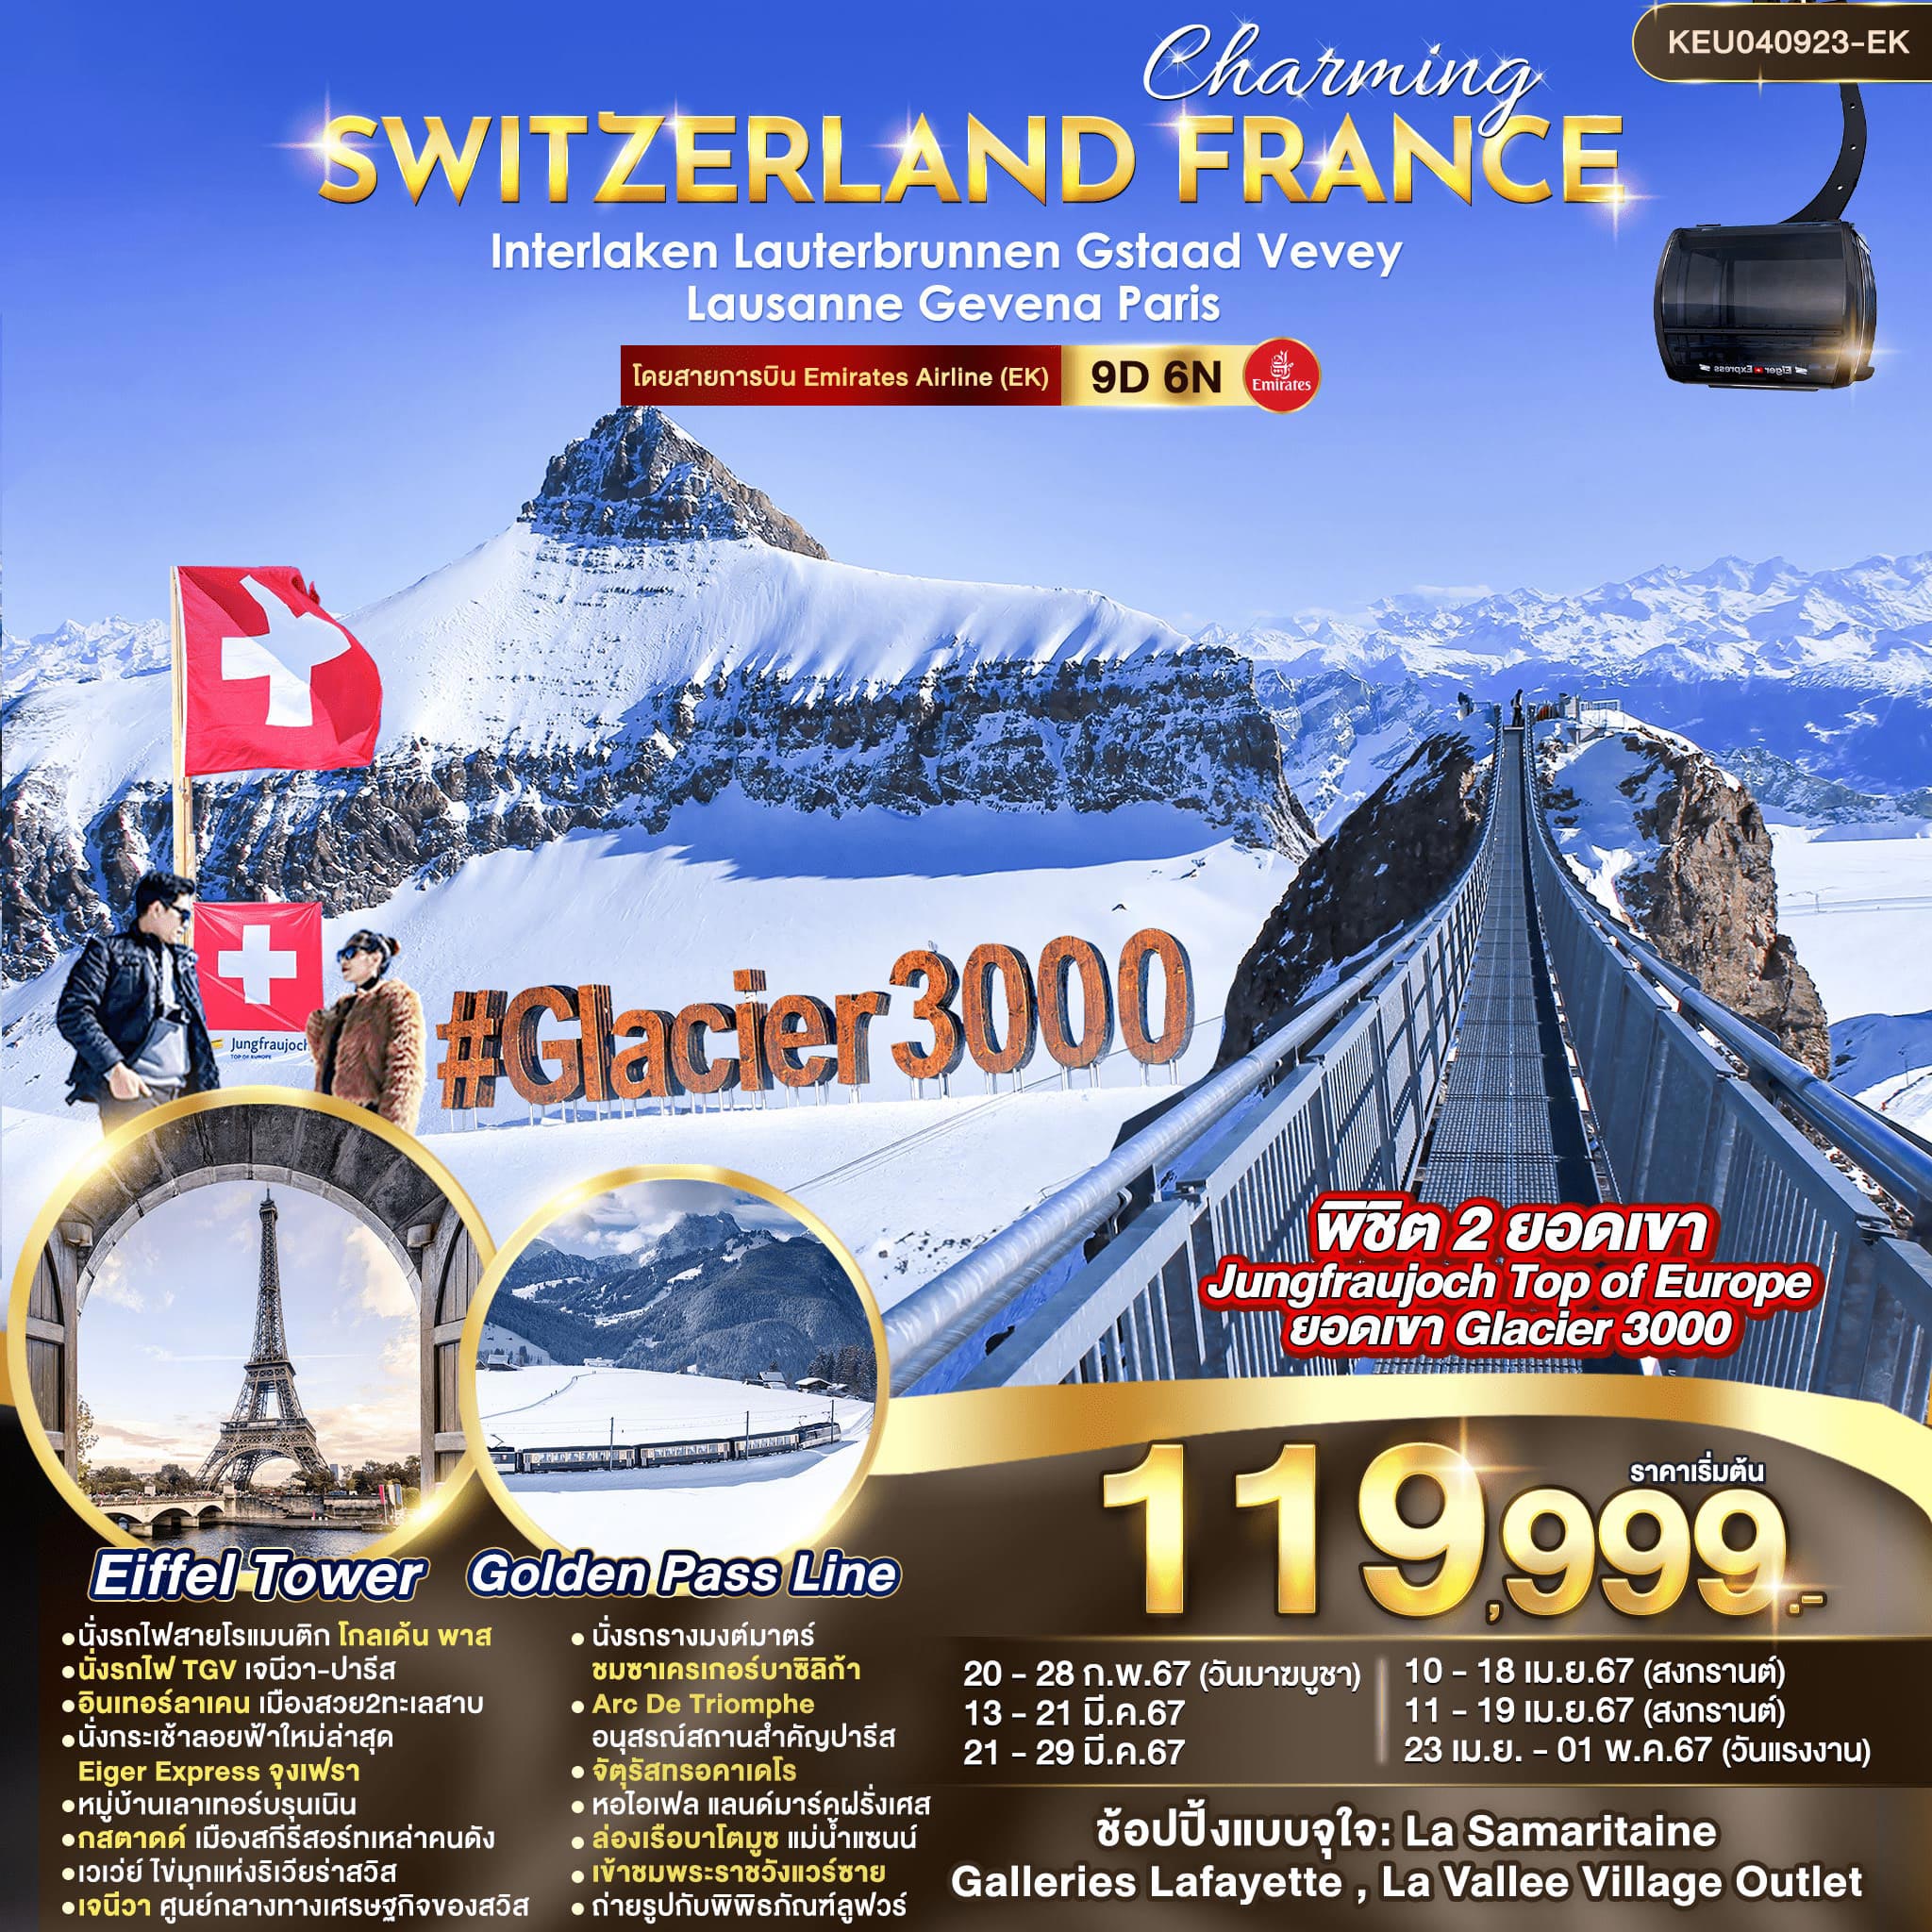 ทัวร์สวิตเซอร์แลนด์ ฝรั่งเศส Charming Switzerland France 9วัน 6คืน